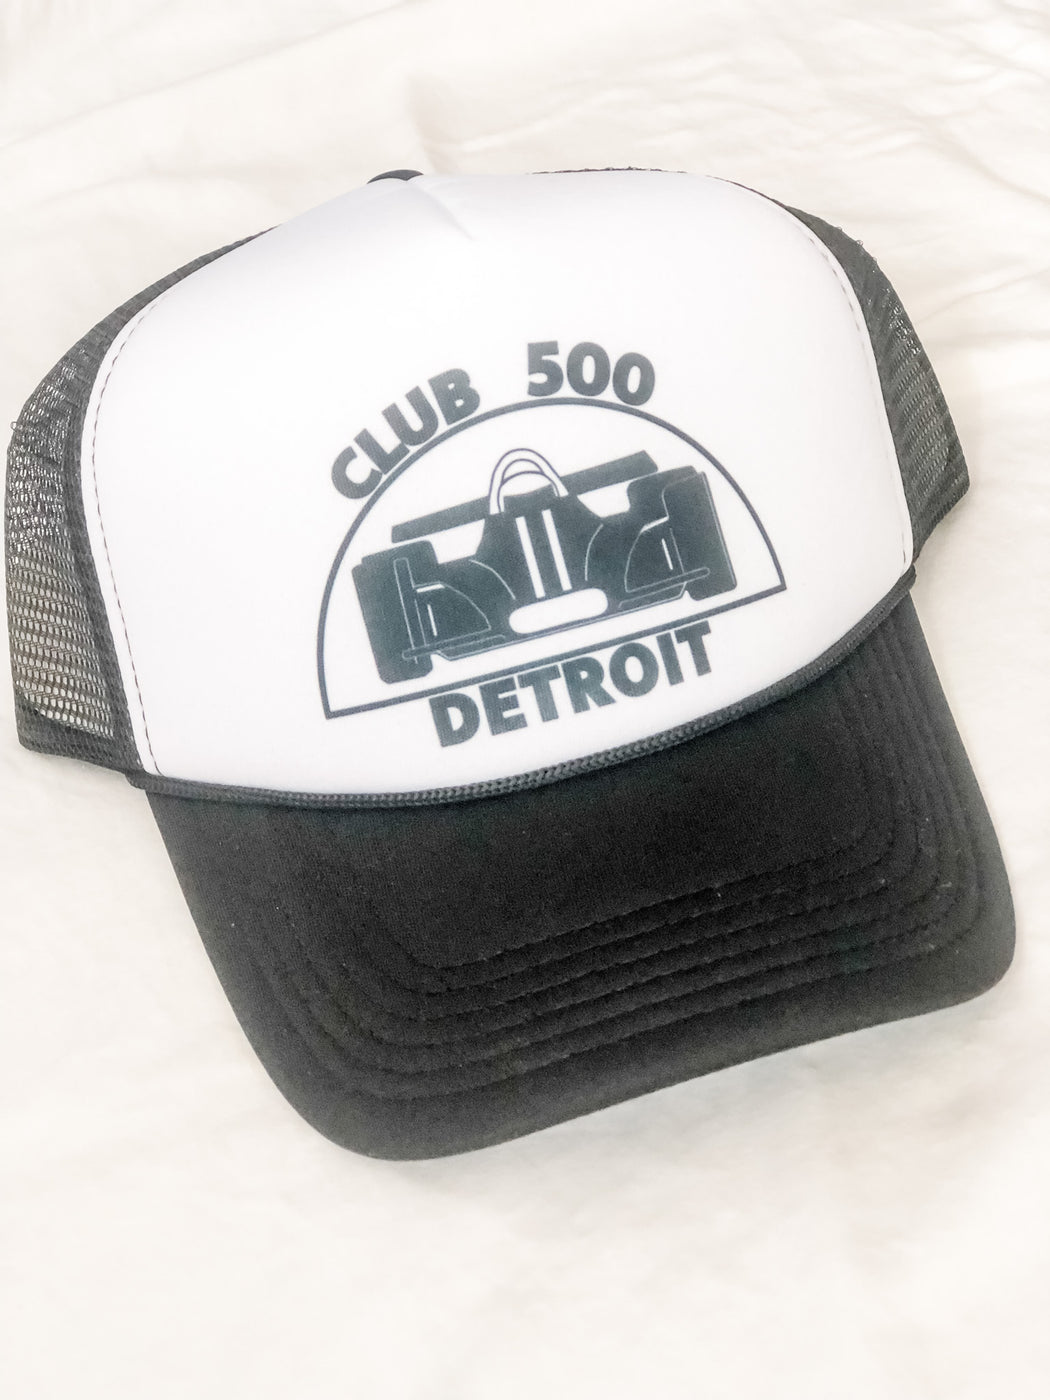 Club 500 Trucker hat